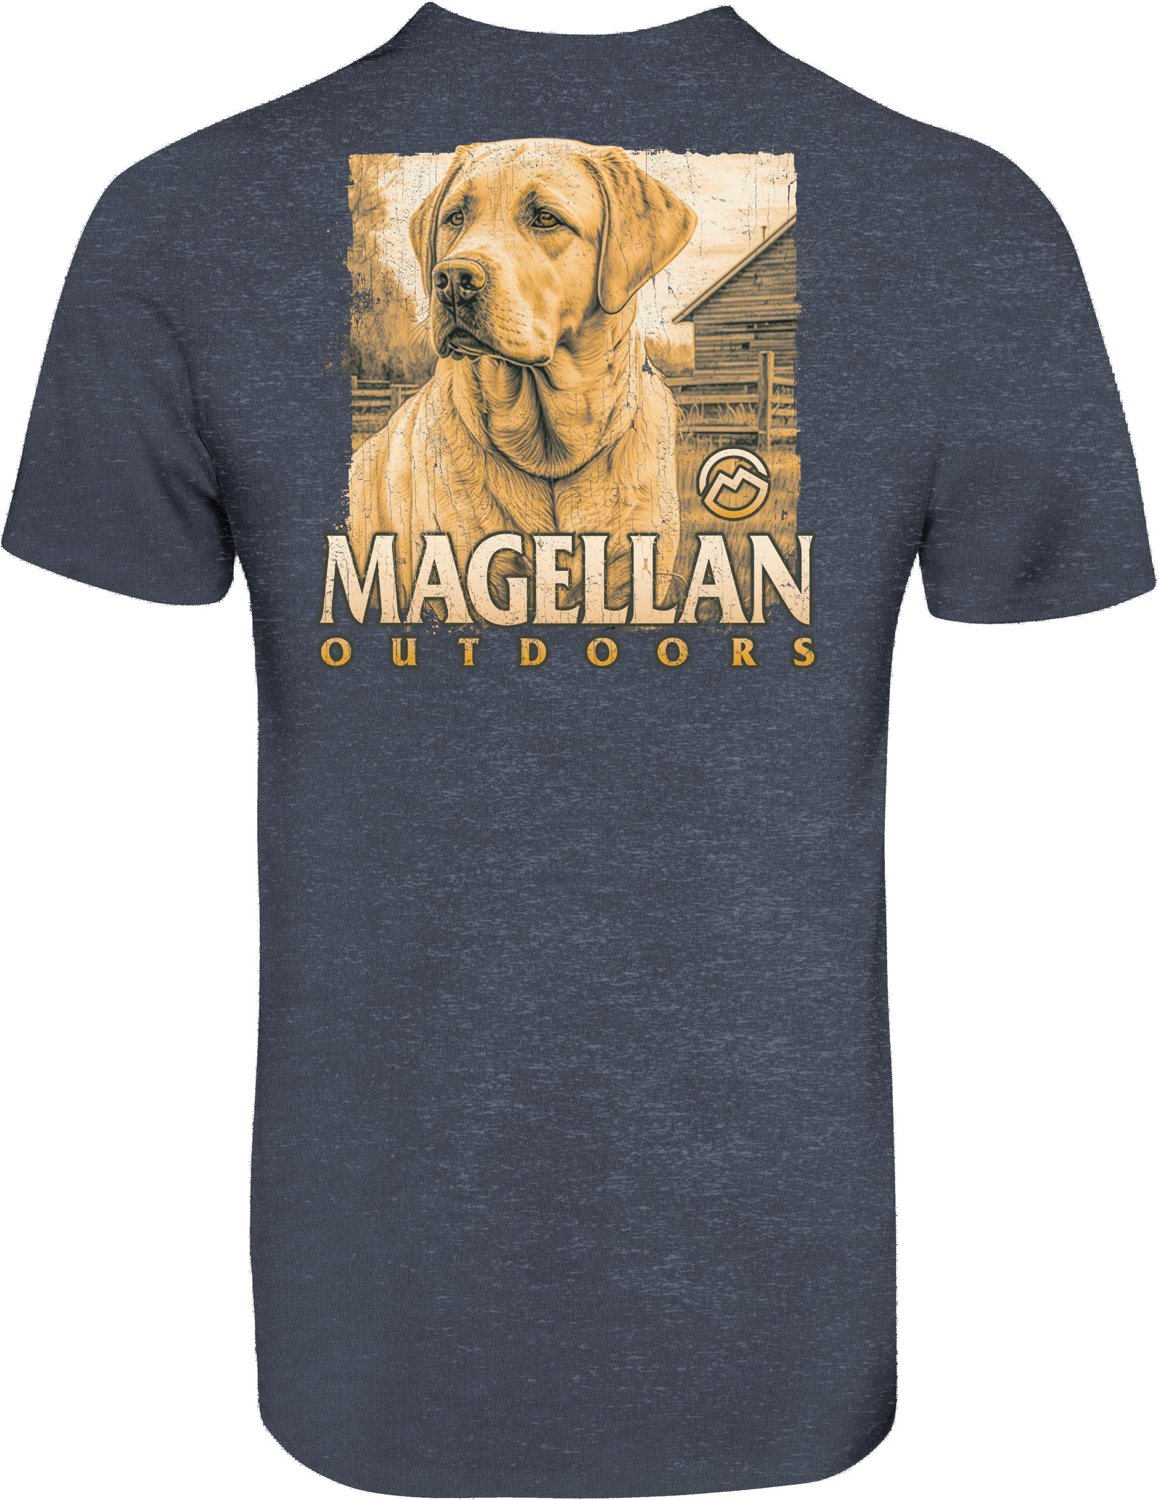 Magellan Outdoors Men's Farm Boy T-shirt